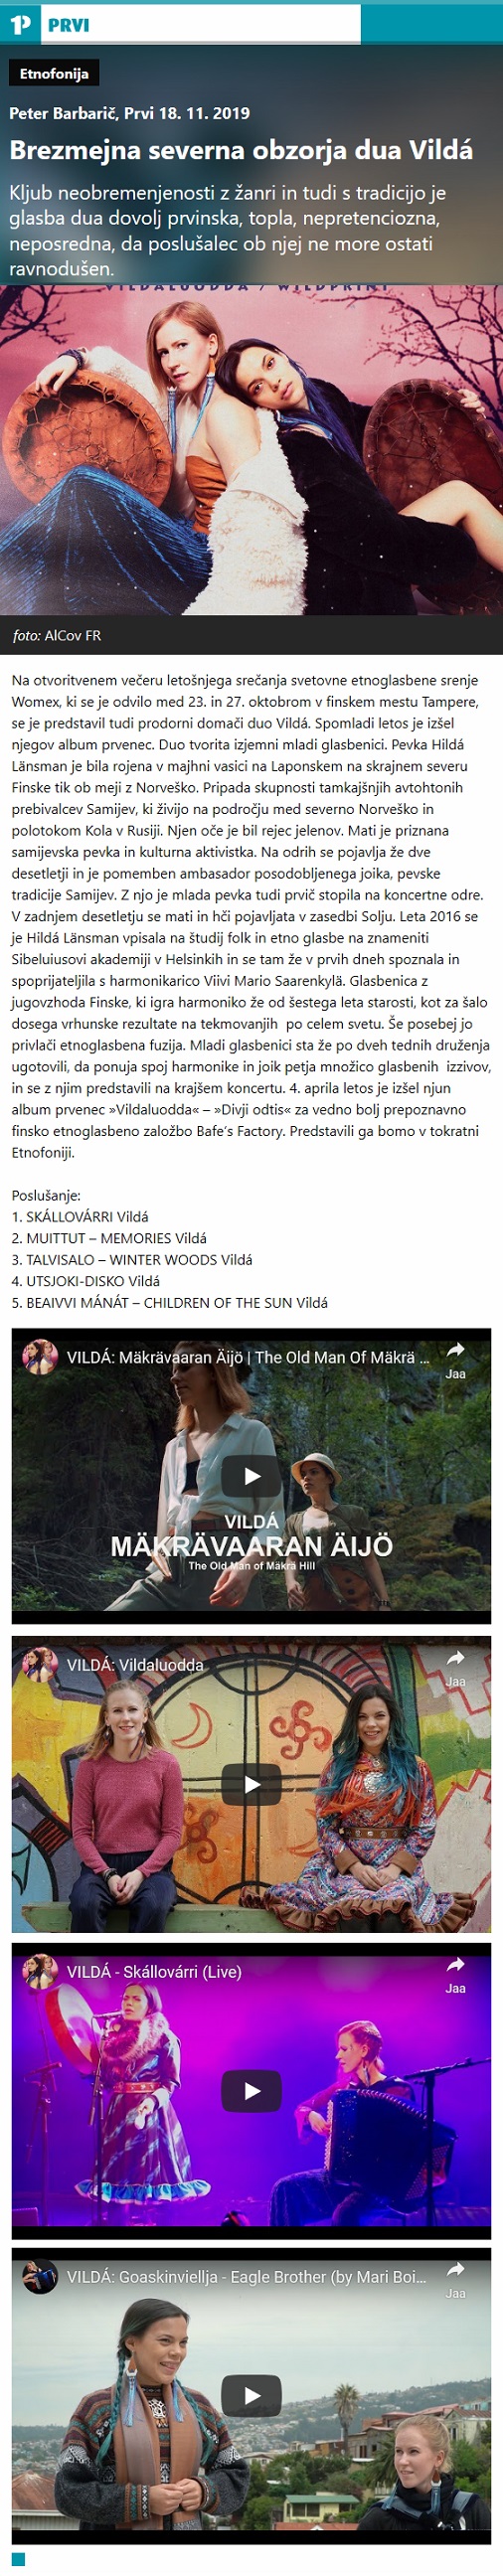 Radio PRVI, Etnofonija, Brezmejna severna obzorja dua Vildá (Slovenia), 18.11.2019